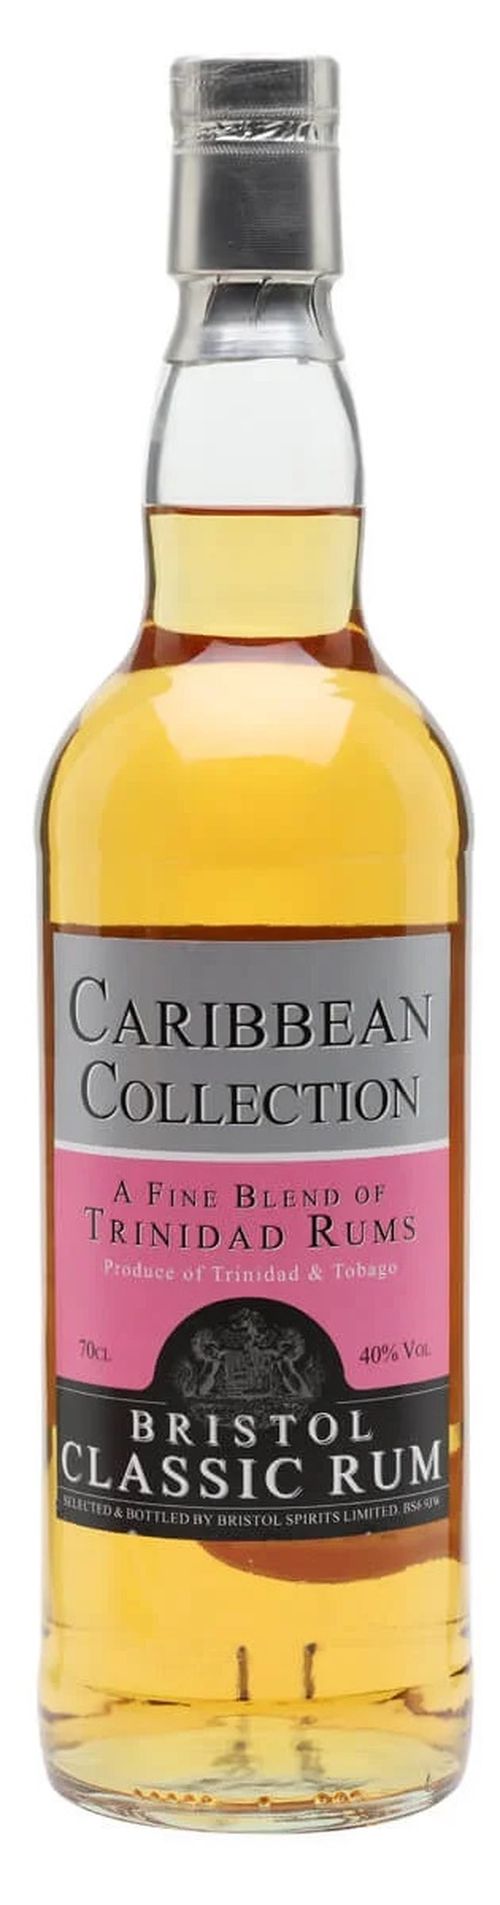 Bristol Classic Rum Caribbean Collection Trinidad